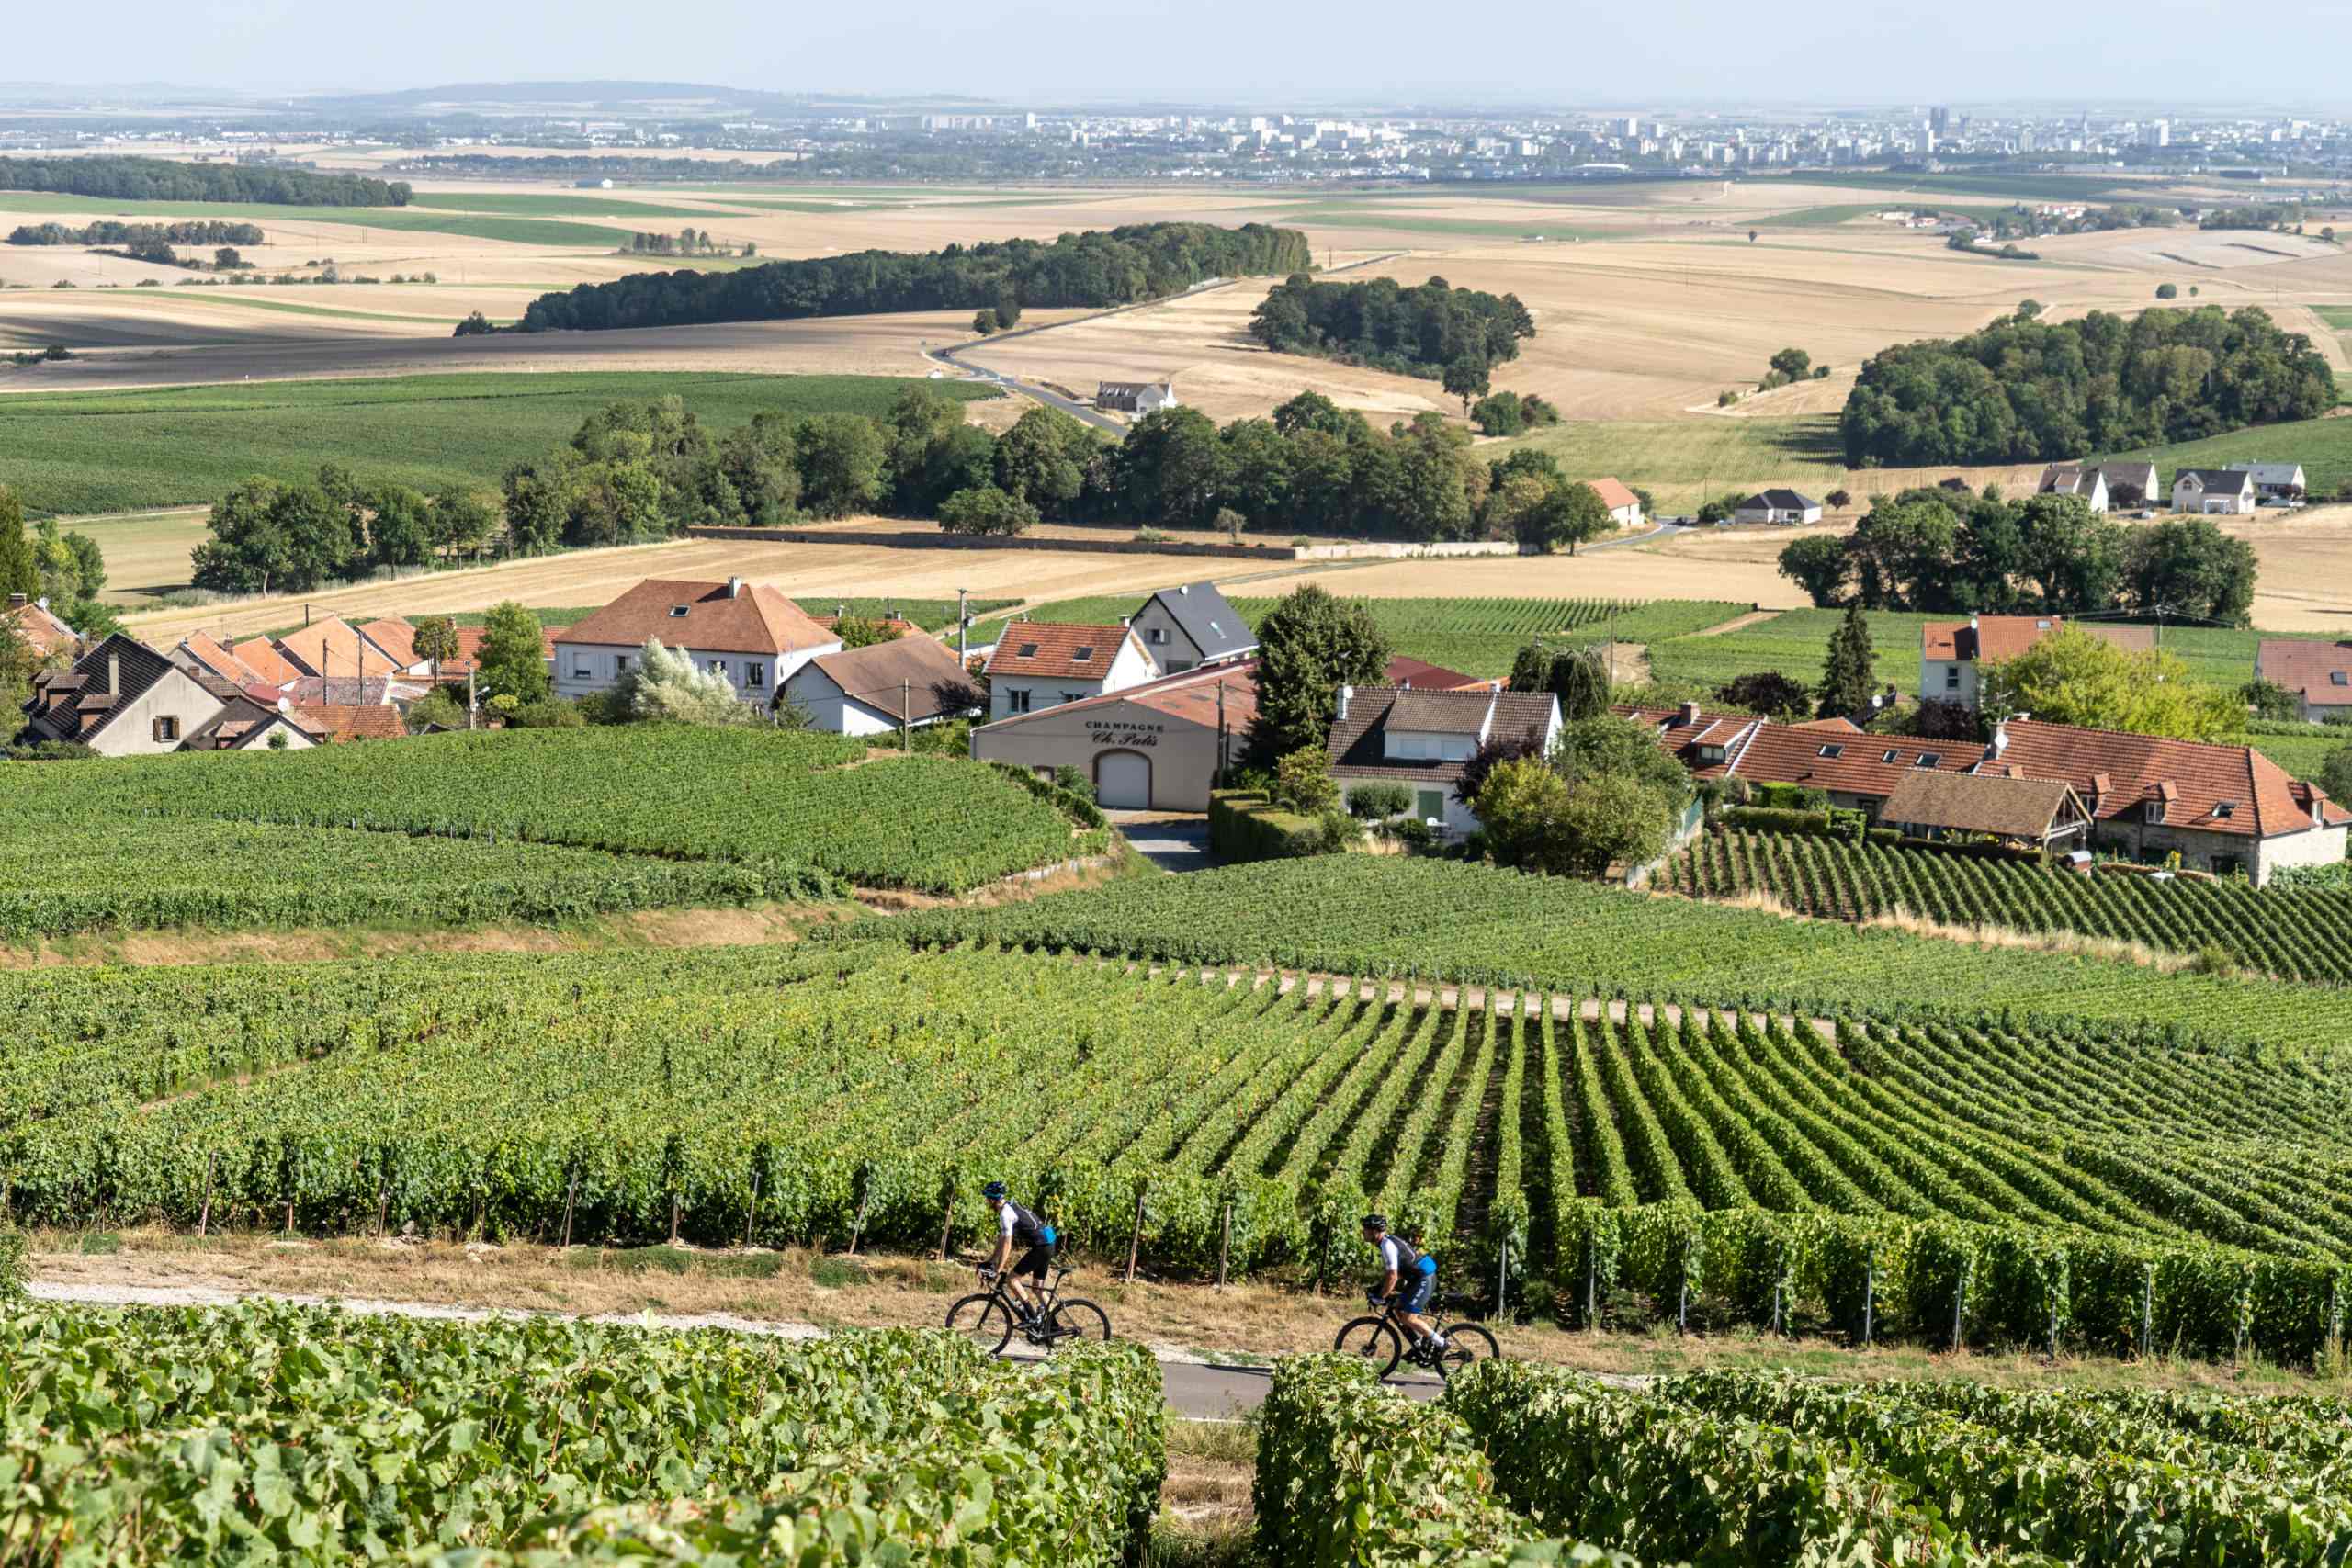 Wielrenners fietsen door champagnevelden bij Reims op weg naar Parijs